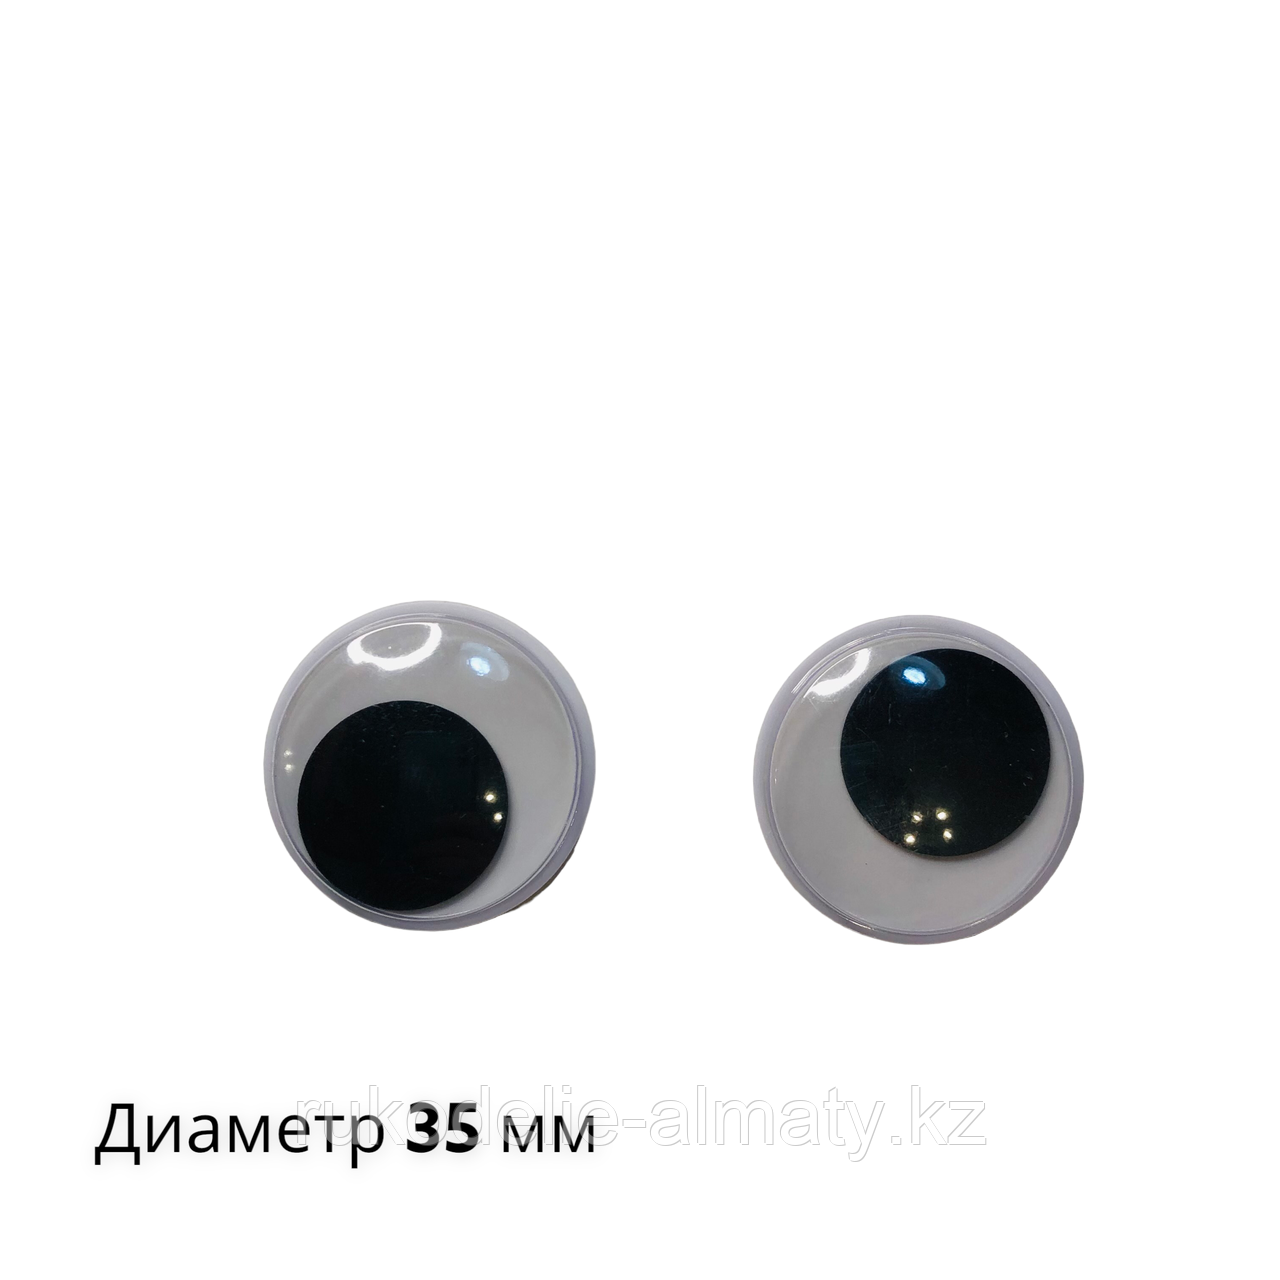 Глазки клеевые круглые, белые с бегающими зрачками 35 мм